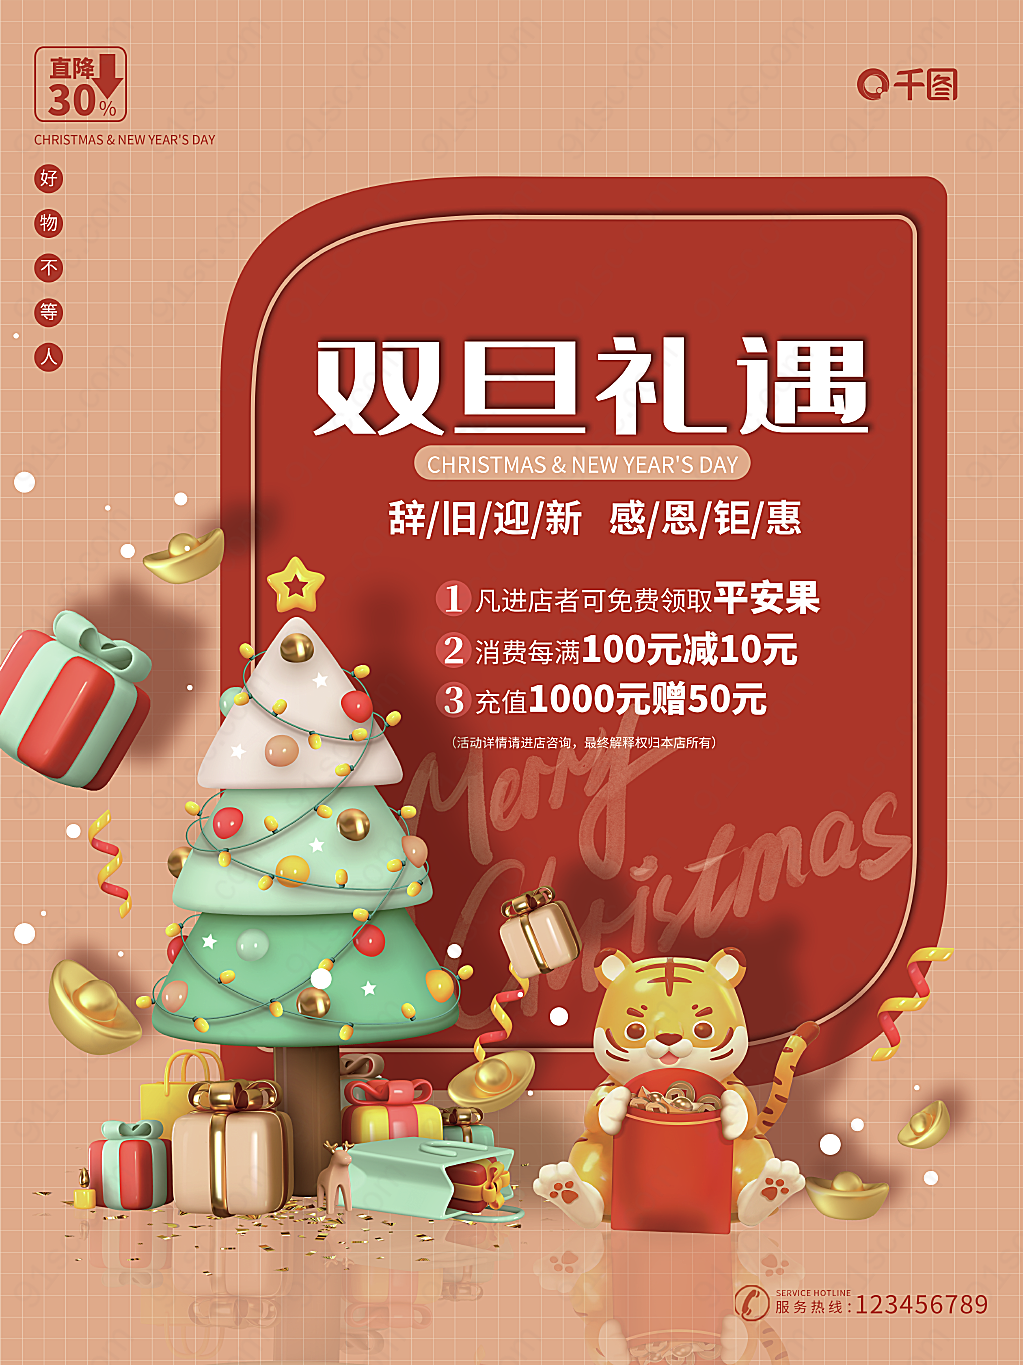 双旦礼遇圣诞元旦新年虎年促销活动立体节日节日海报